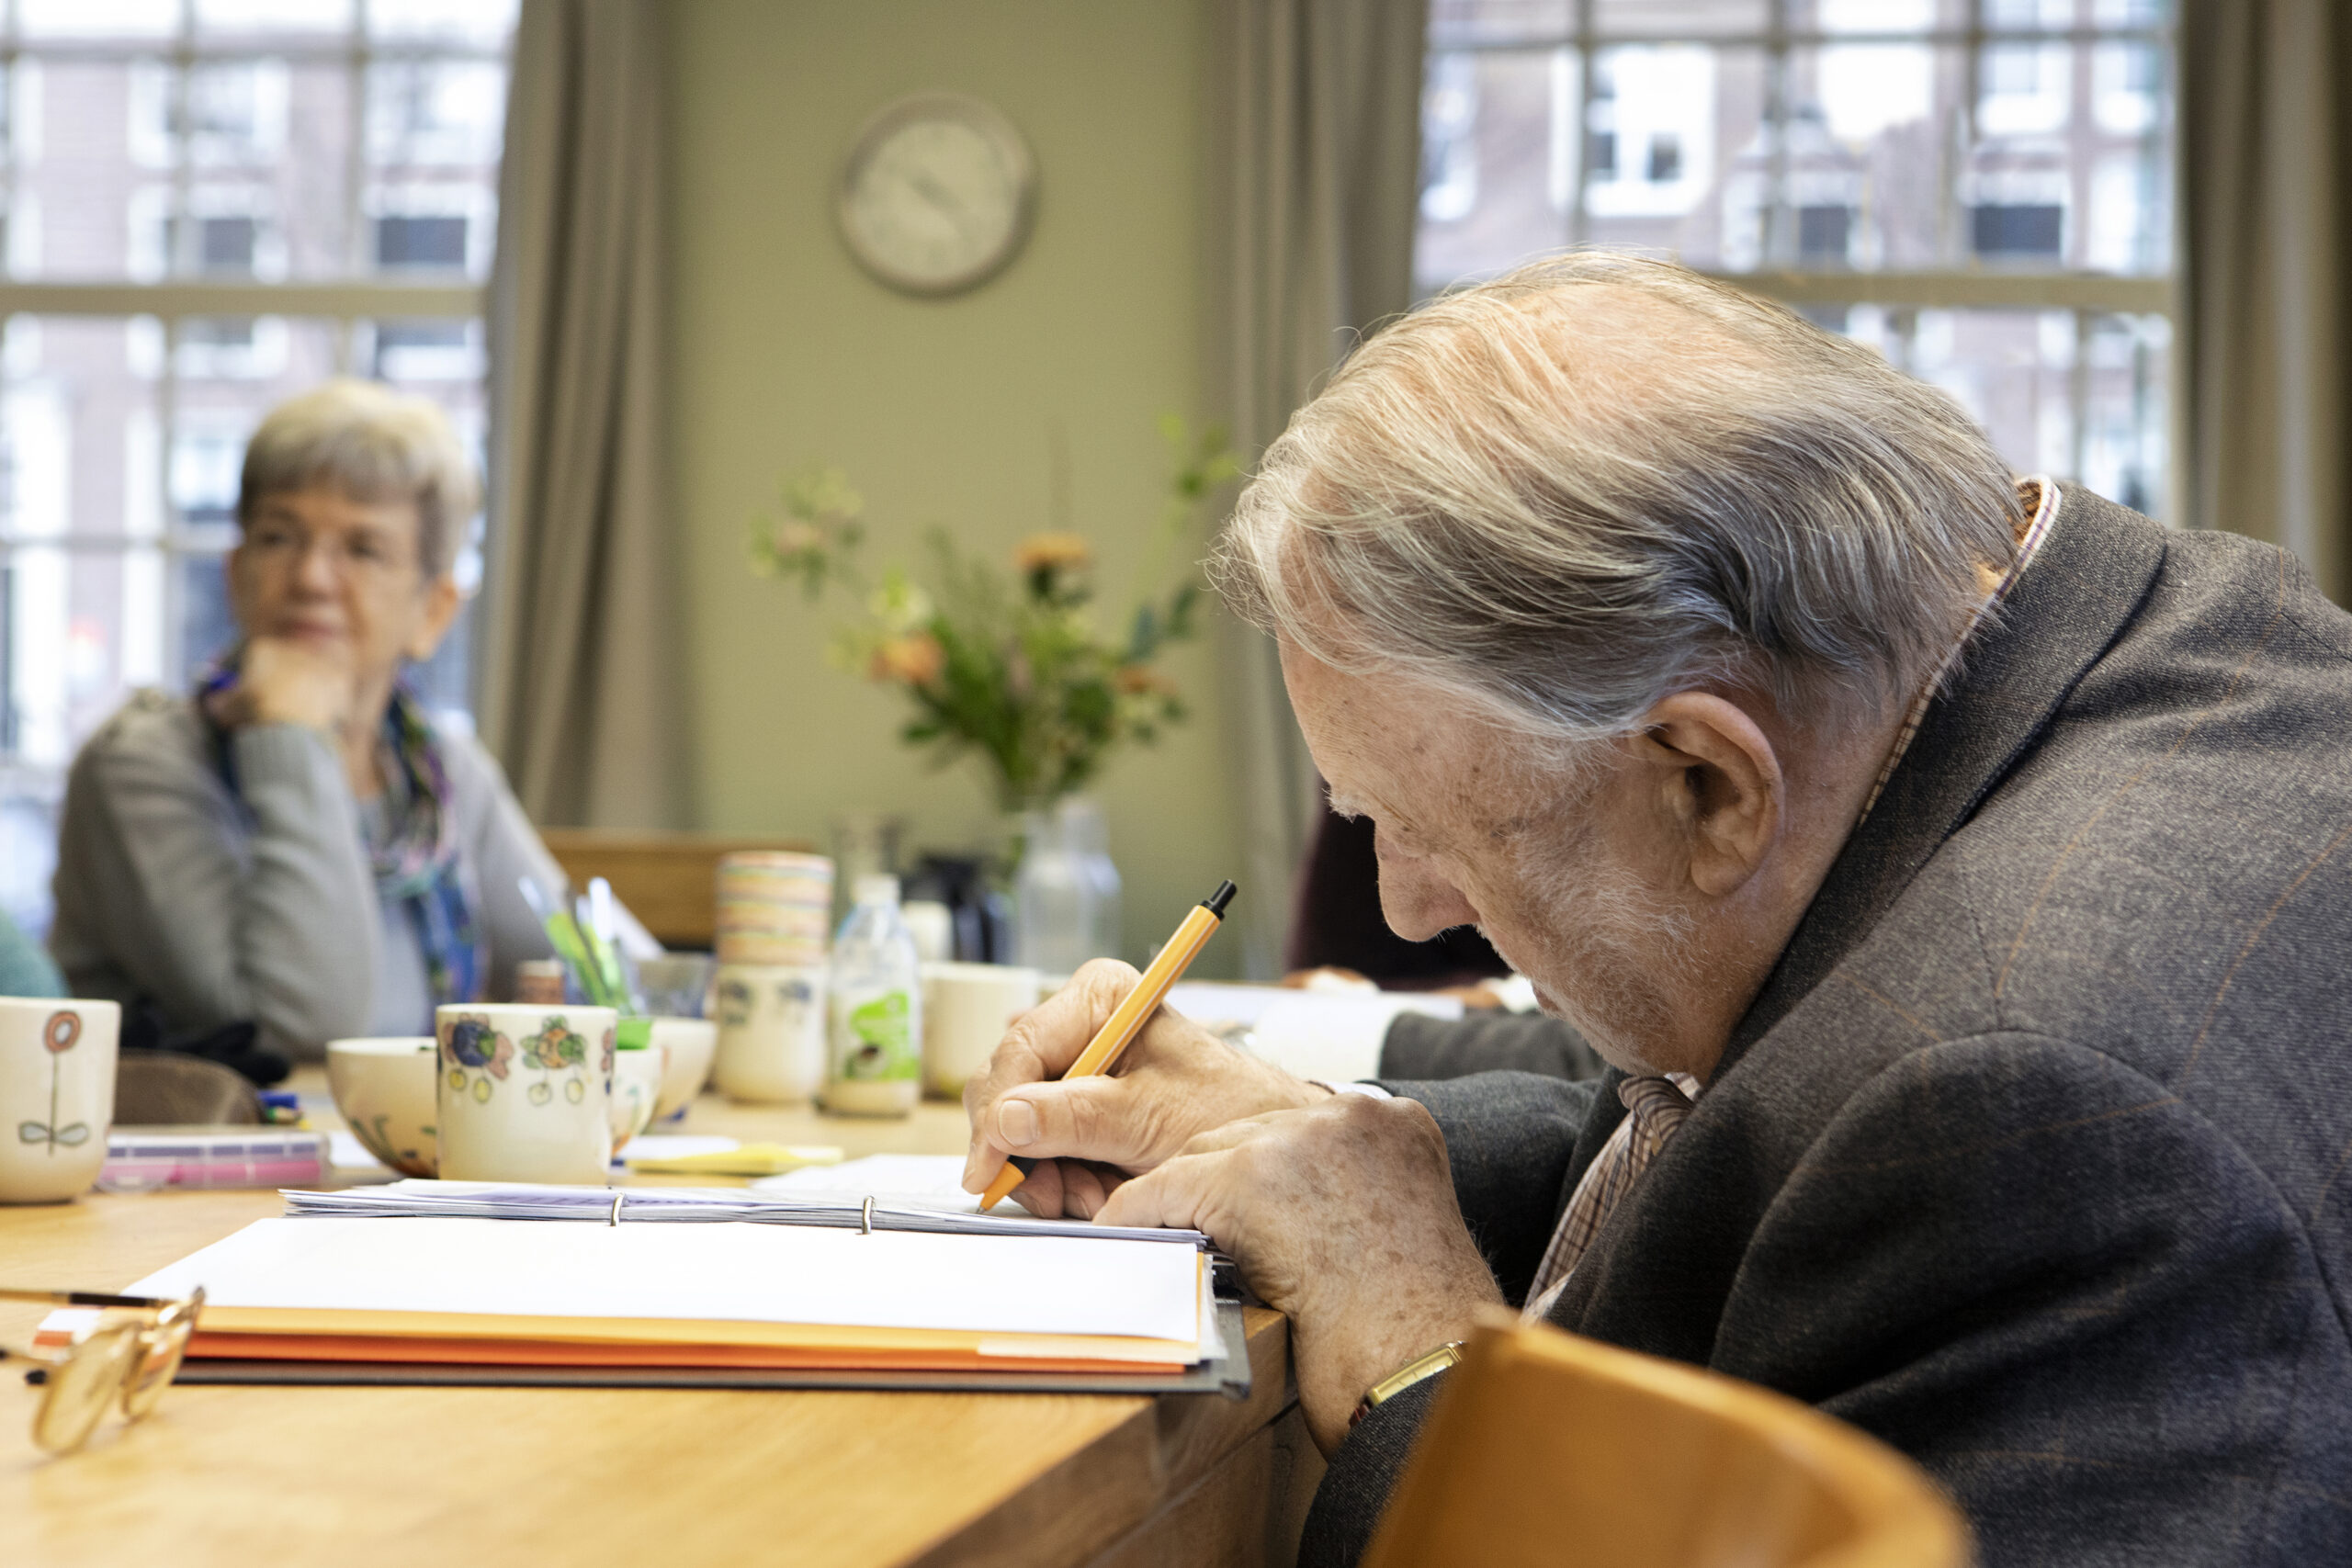 Sociale benadering voor verbetering welzijn van mensen met dementie